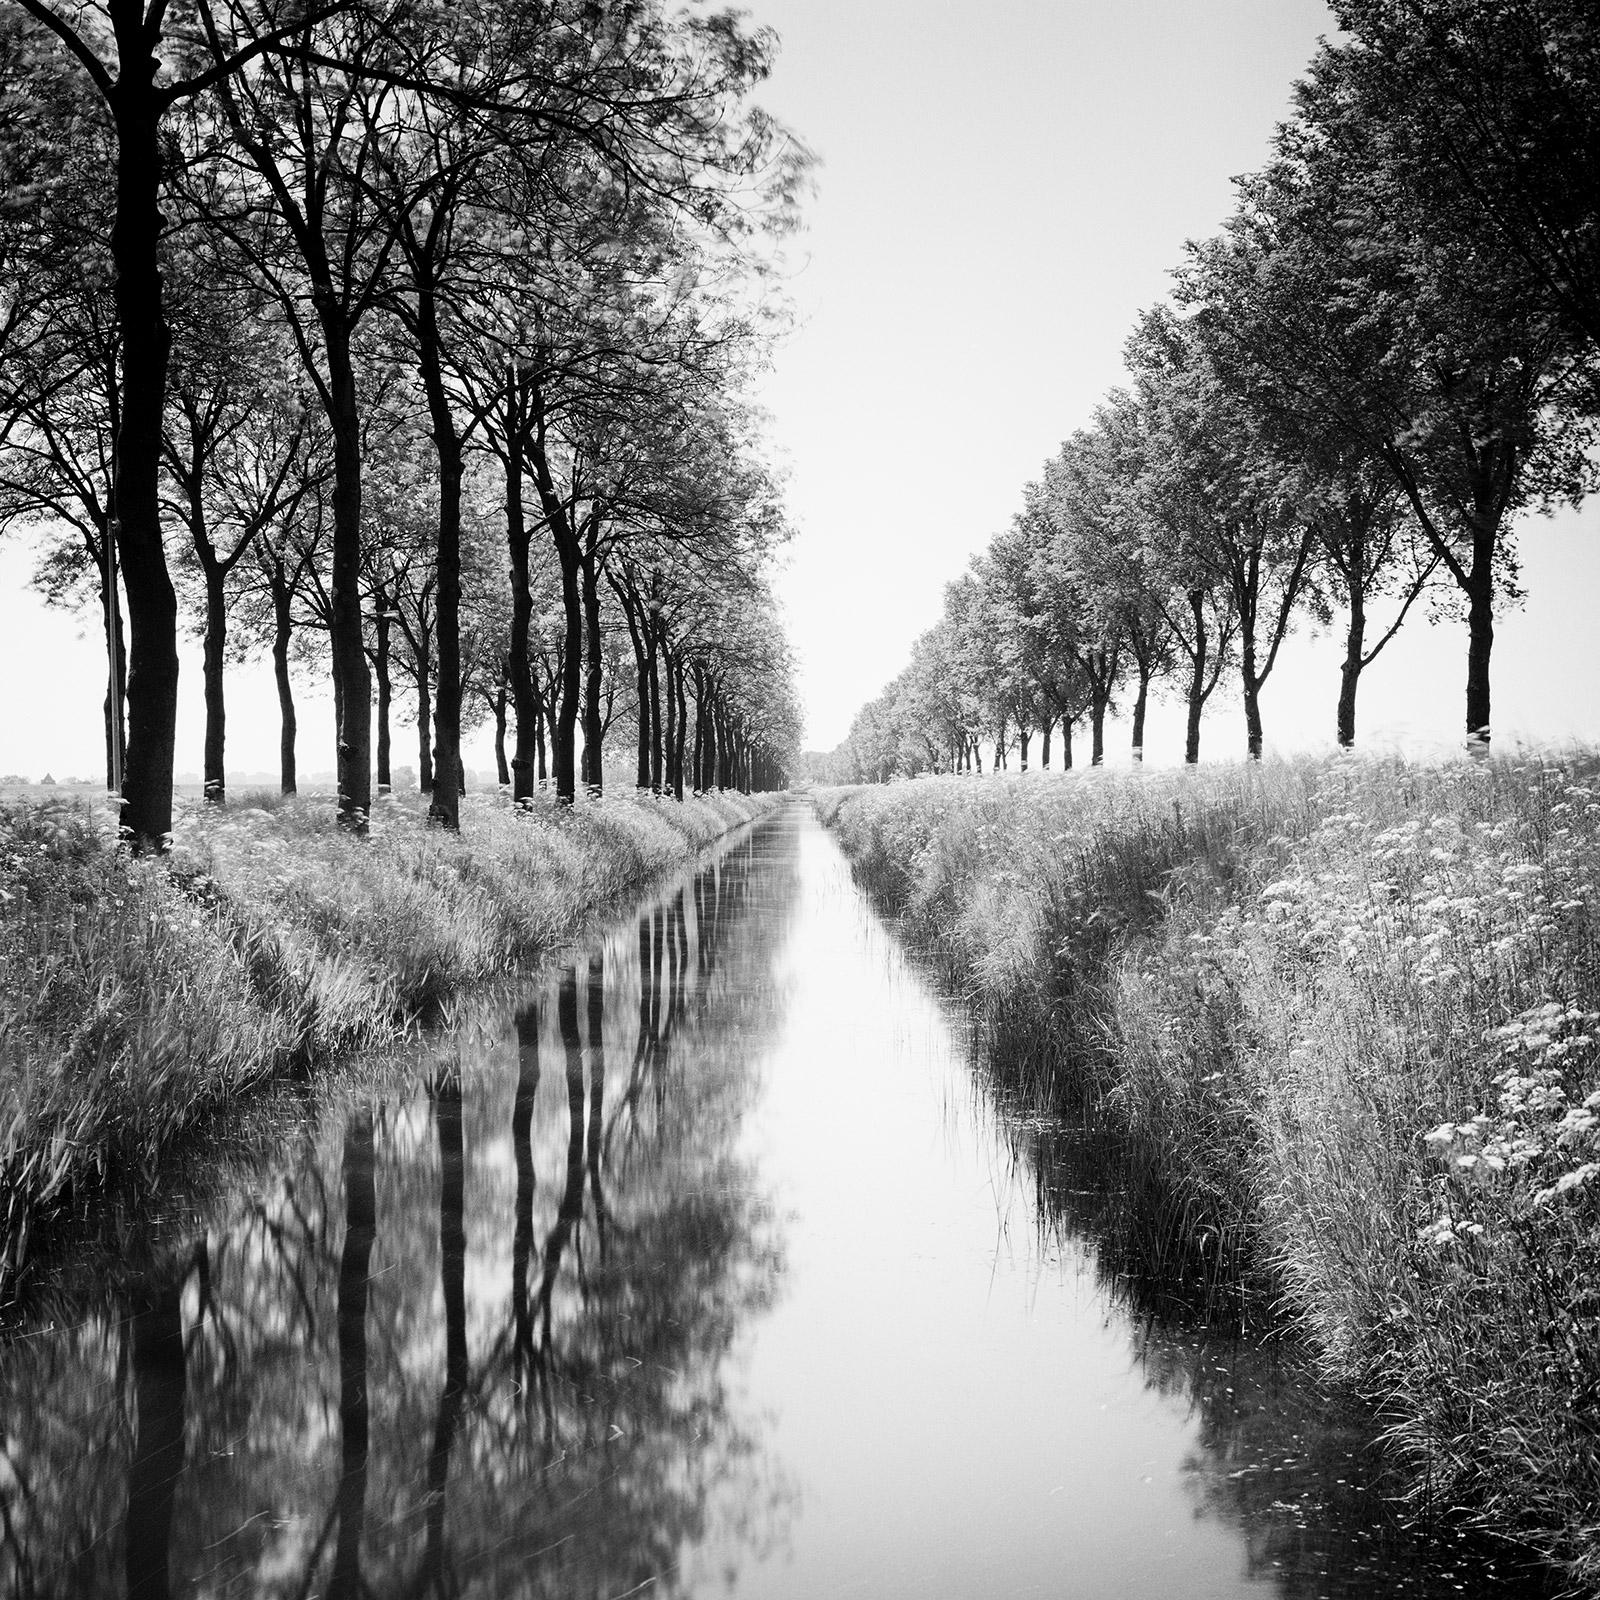 Gerald Berghammer Black and White Photograph – Gracht, Tree Avenue, Wasserspiegelung, Schwarz-Weiß-Fotografie-Kunstdruck